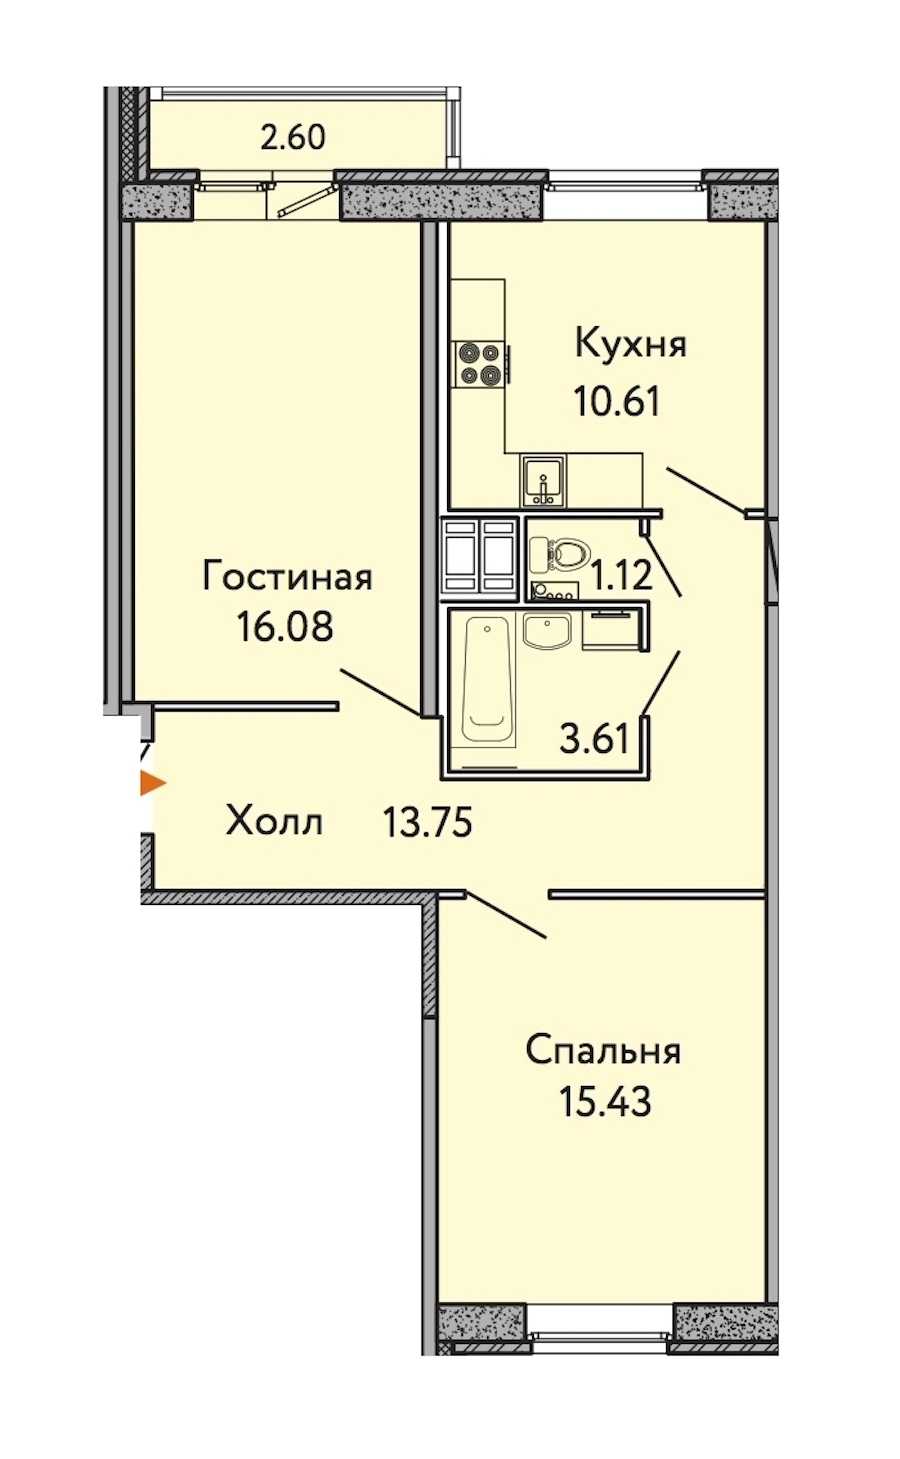 Двухкомнатная квартира в : площадь 61.38 м2 , этаж: 6 – купить в Санкт-Петербурге